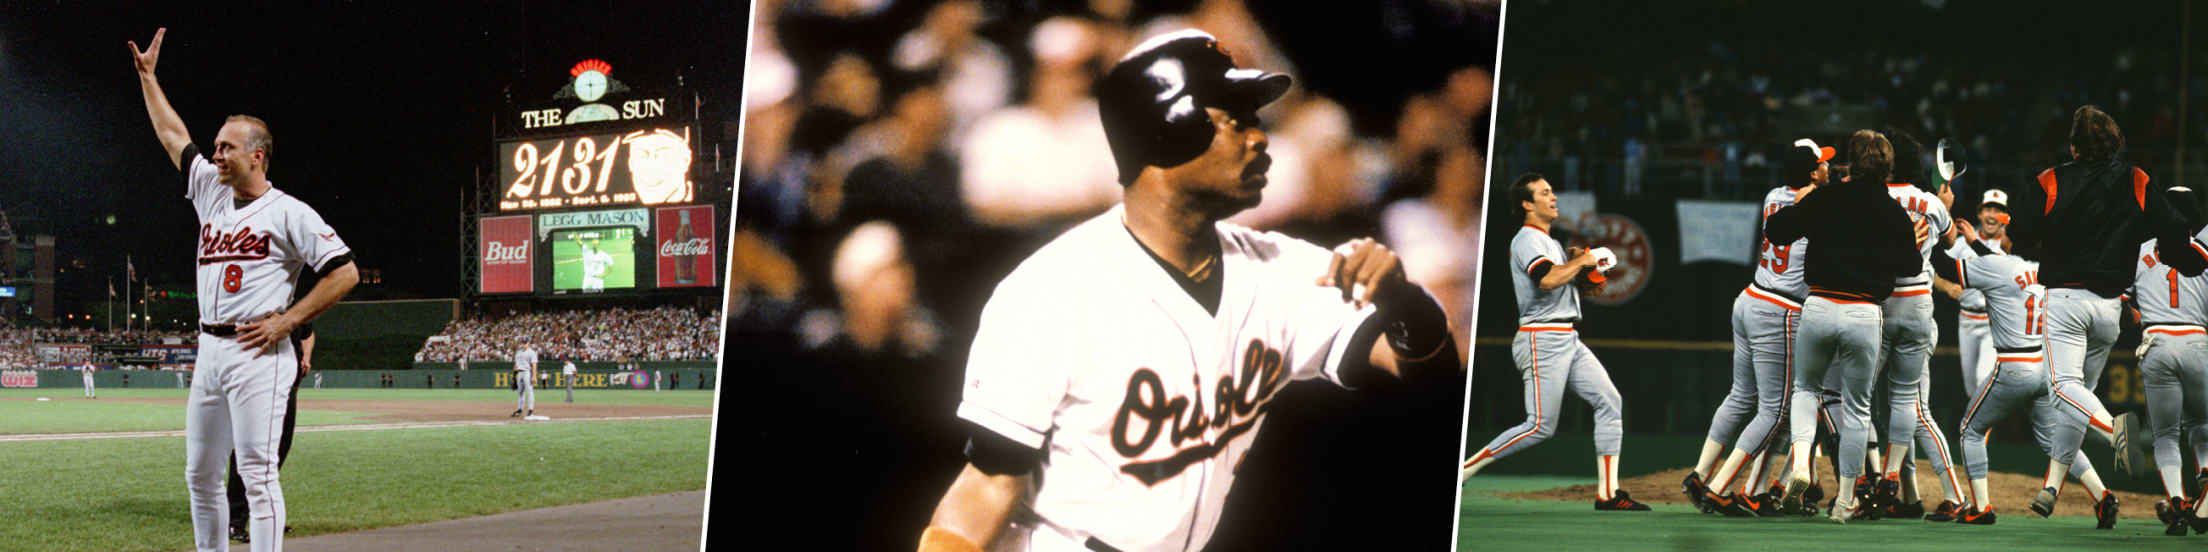 Cal Ripken Jr. - Baltimore Orioles, '07 Hall Of Fame